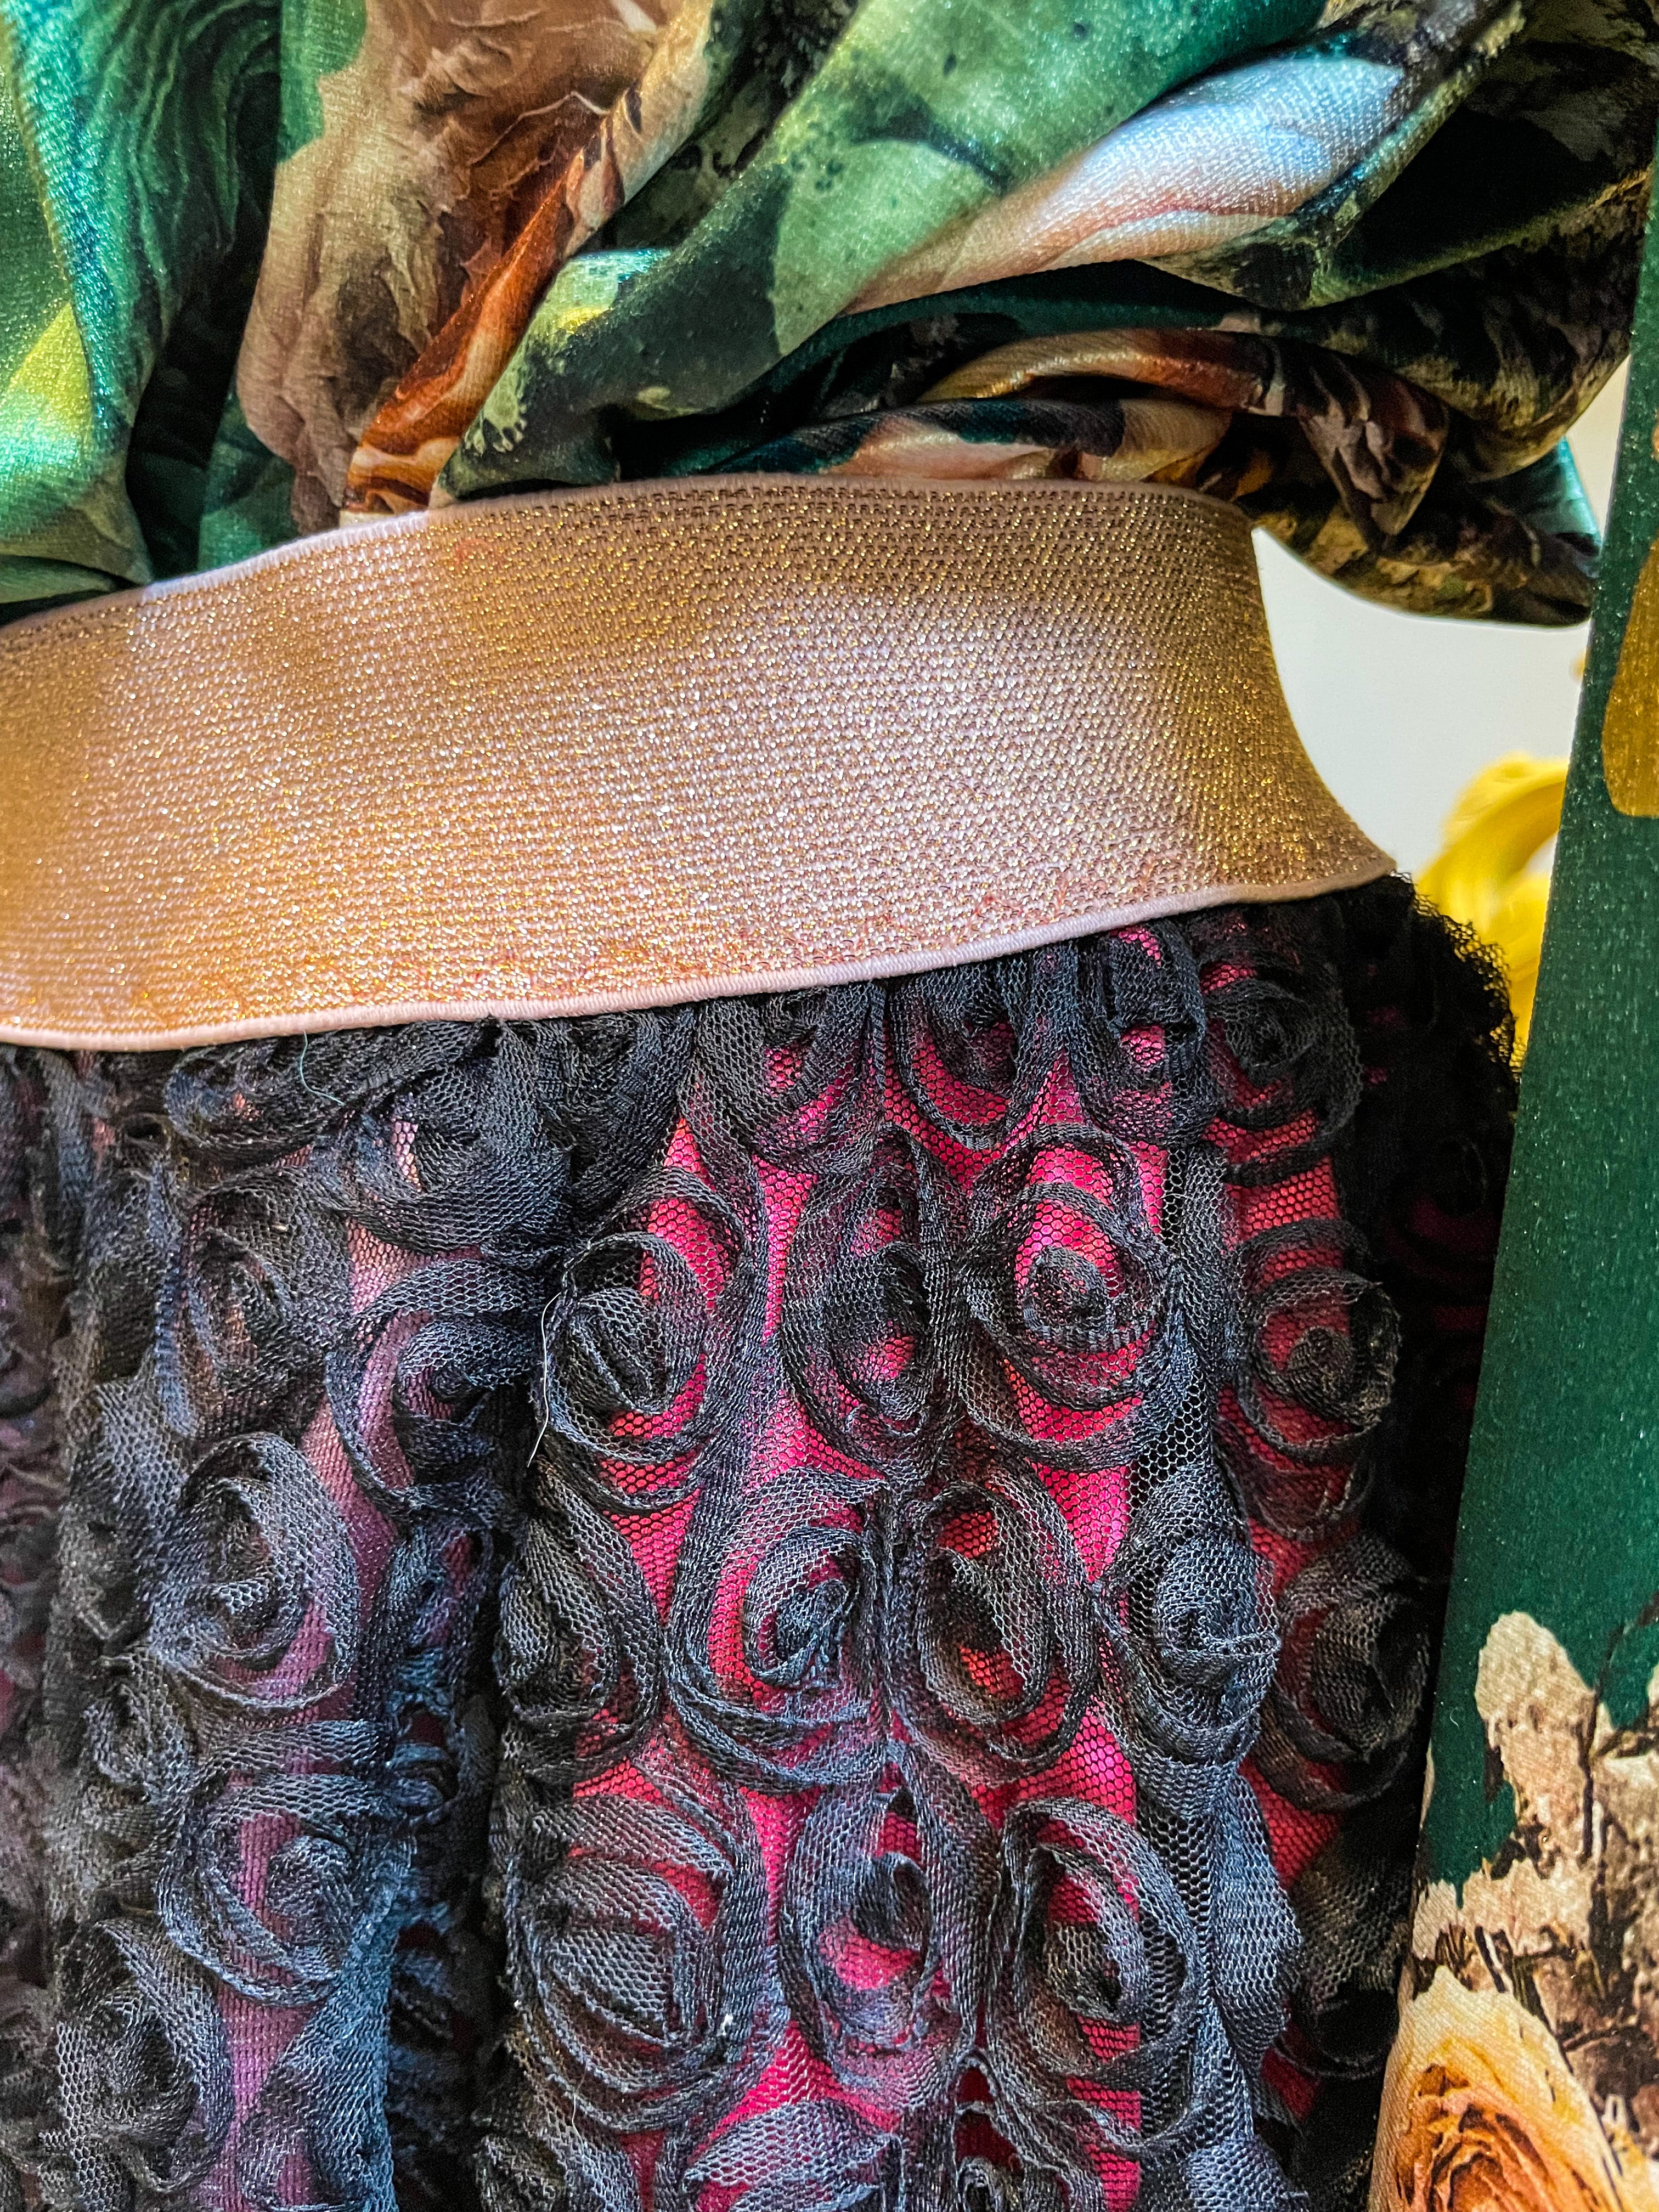 The 'Rosa' skirt